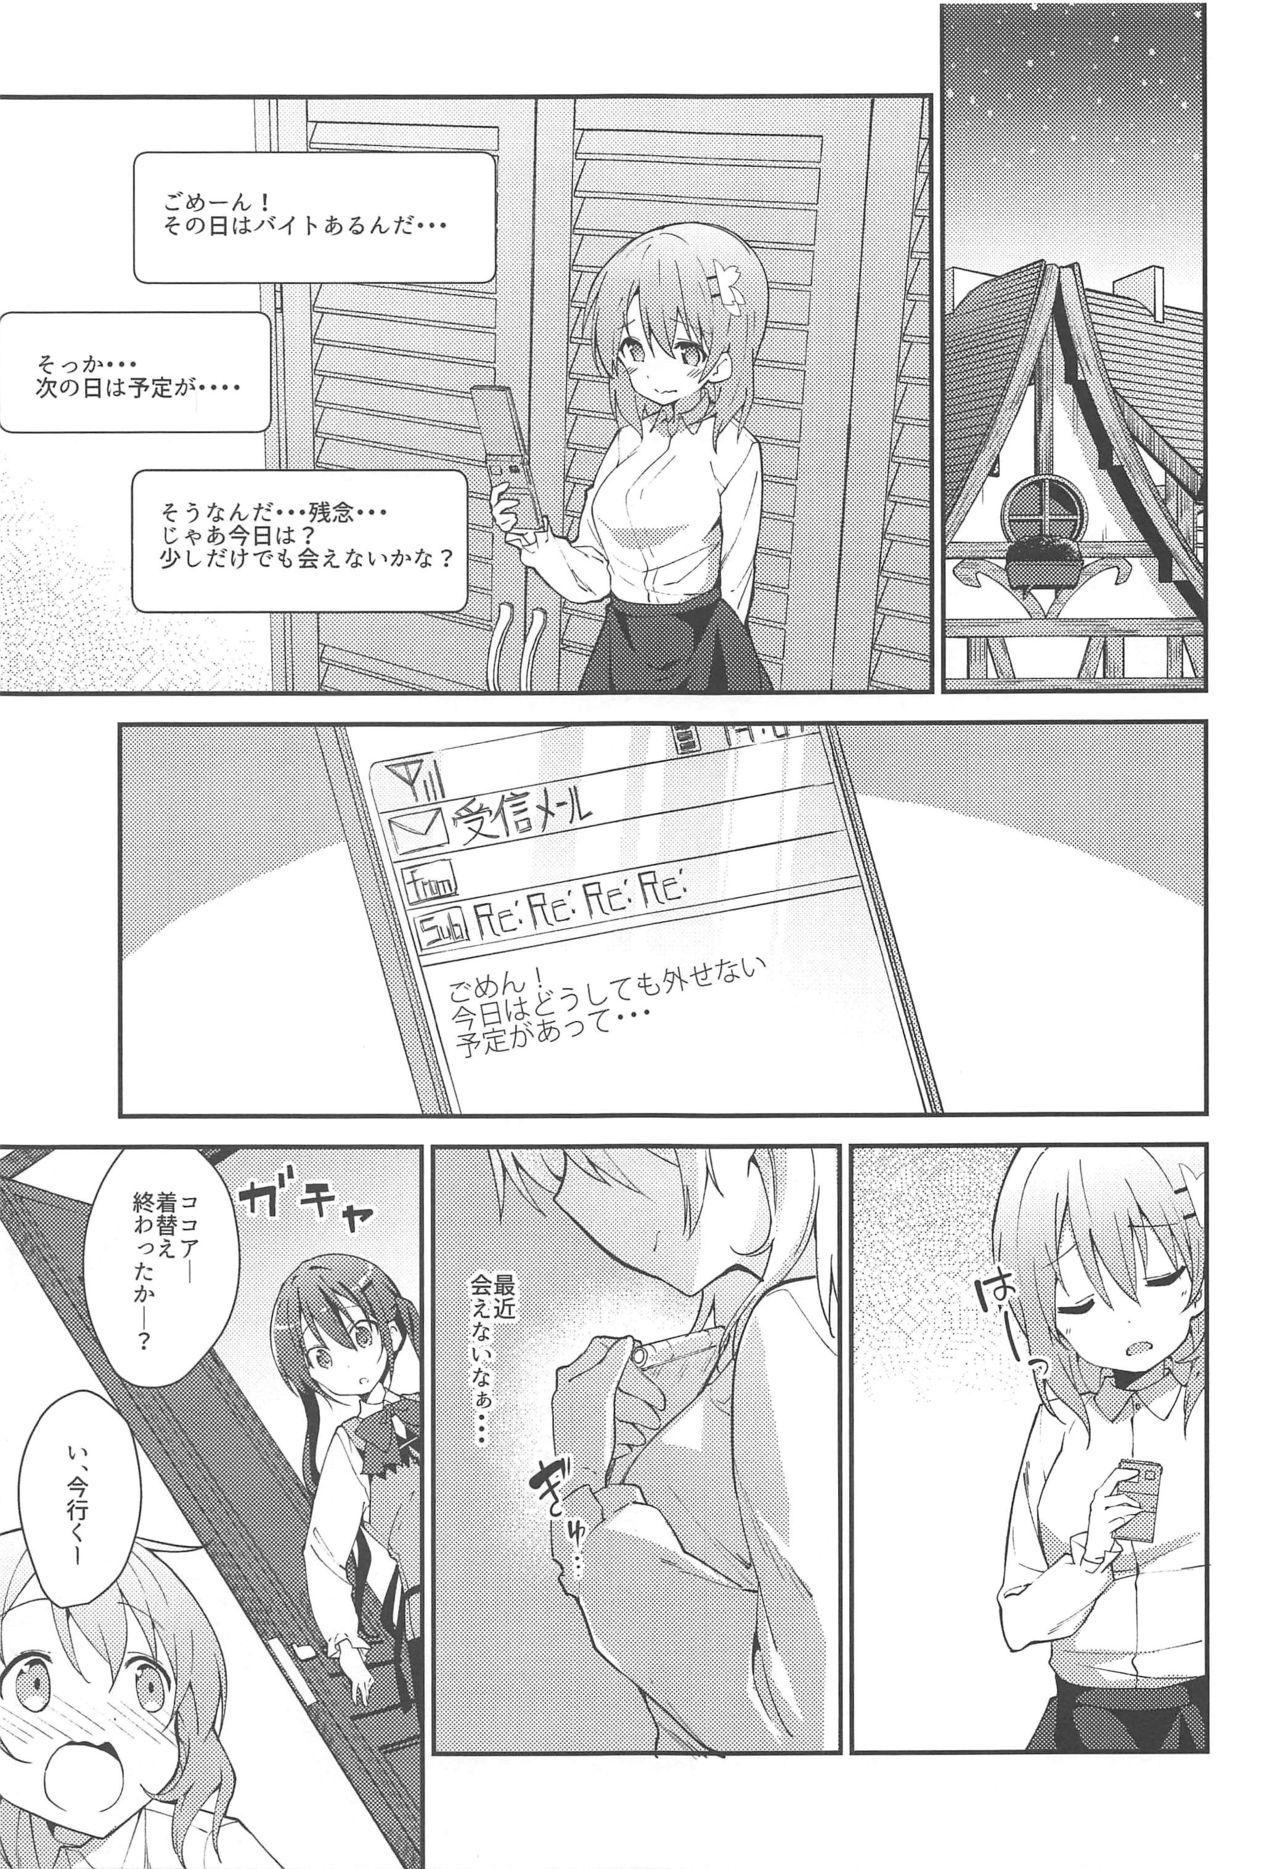 Pissing Attakai Kokoa wa Ikaga desu ka? - How about warm cocoa? - Gochuumon wa usagi desu ka Titten - Page 4